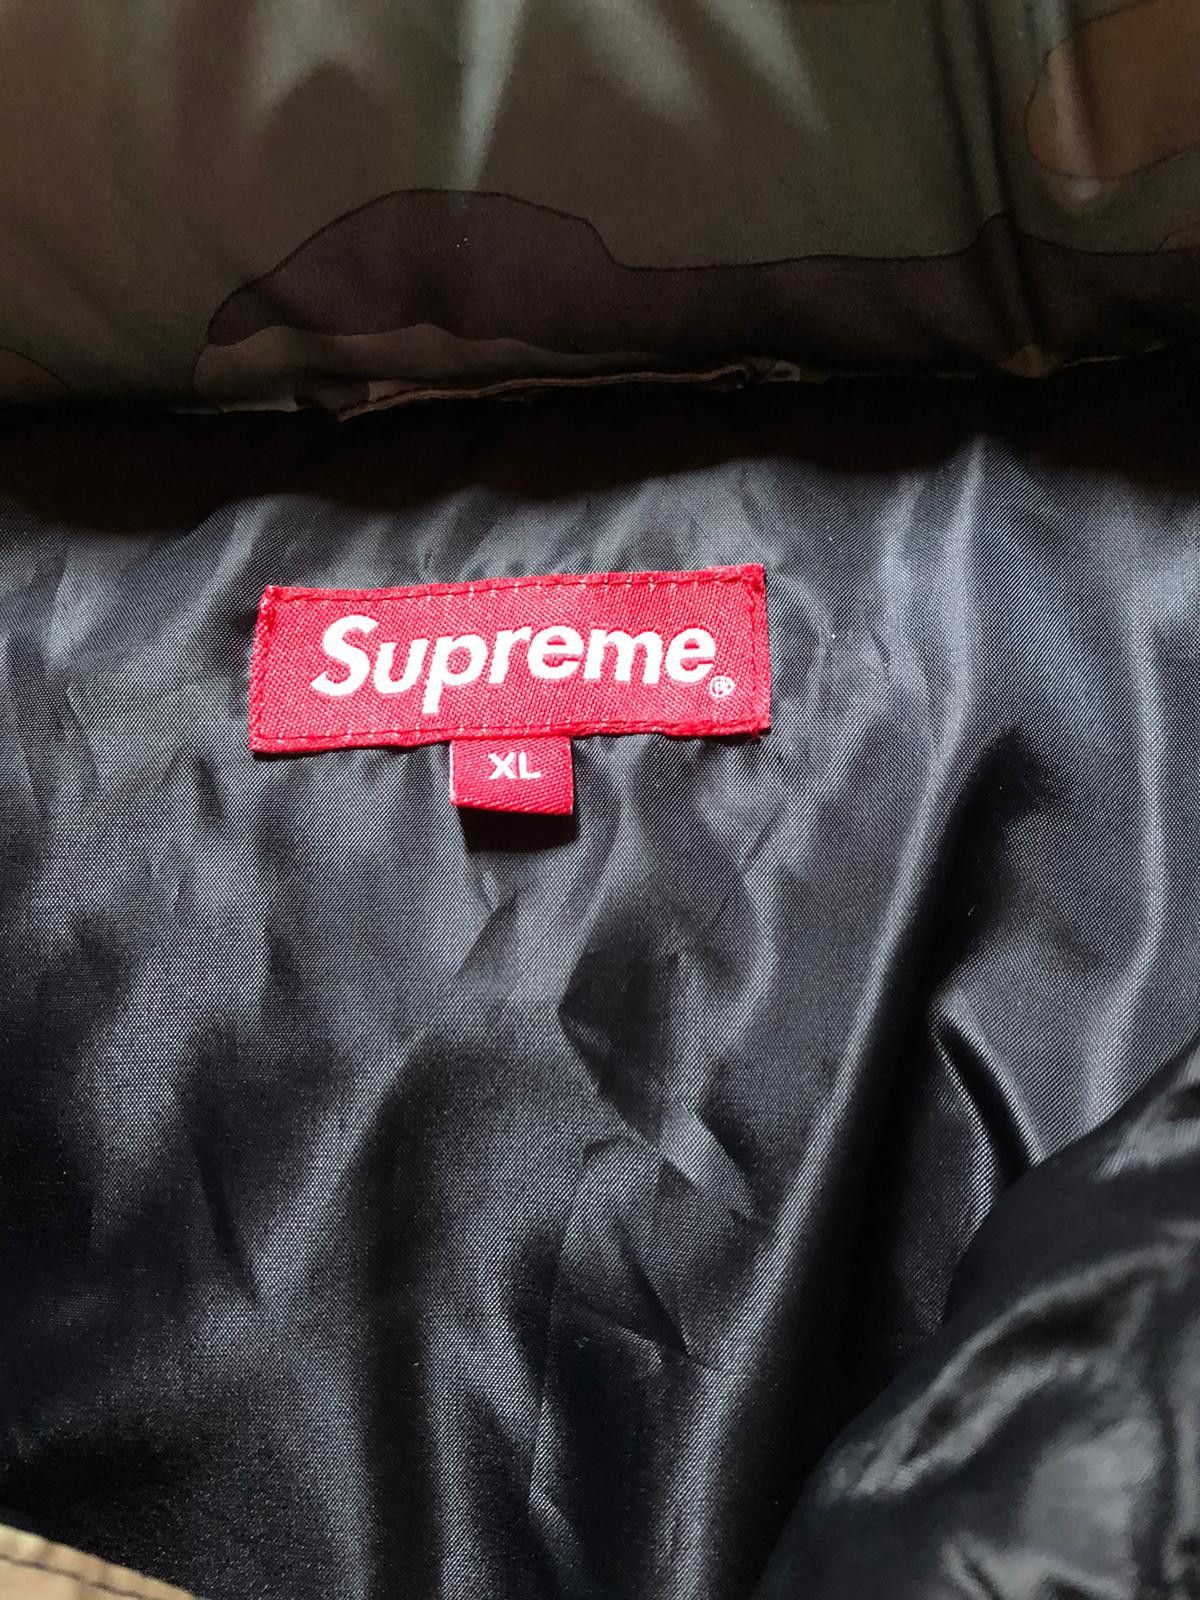 Supreme Supreme Reflective Camo Down Jacket Size US XL / EU 56 / 4 - 6 Thumbnail